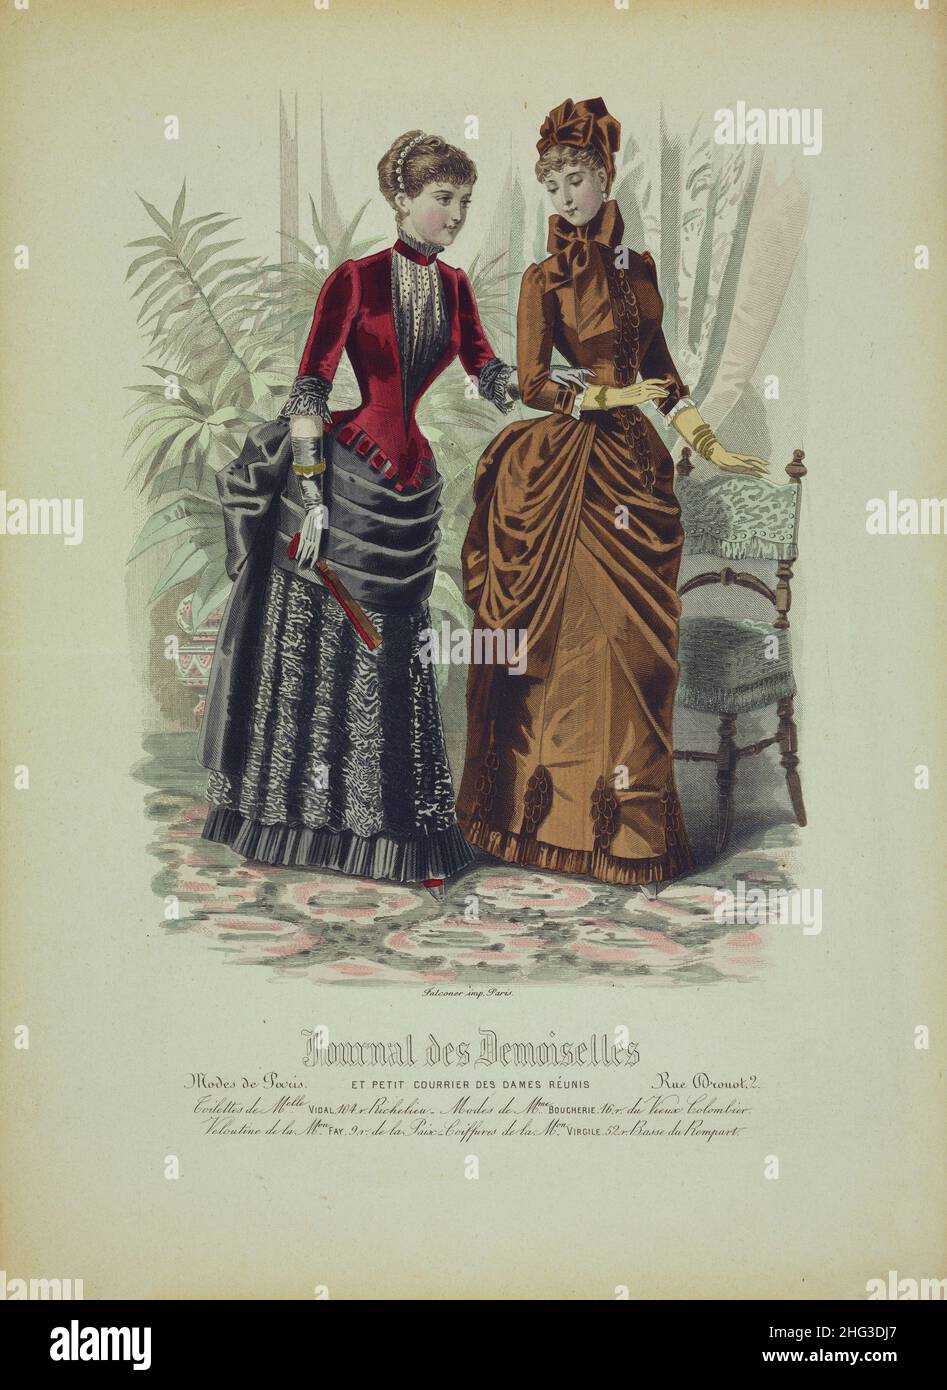 Lithographie couleur vintage de la mode parisienne: Magazine pour filles et un petit courrier des dames réunies.1884 Banque D'Images